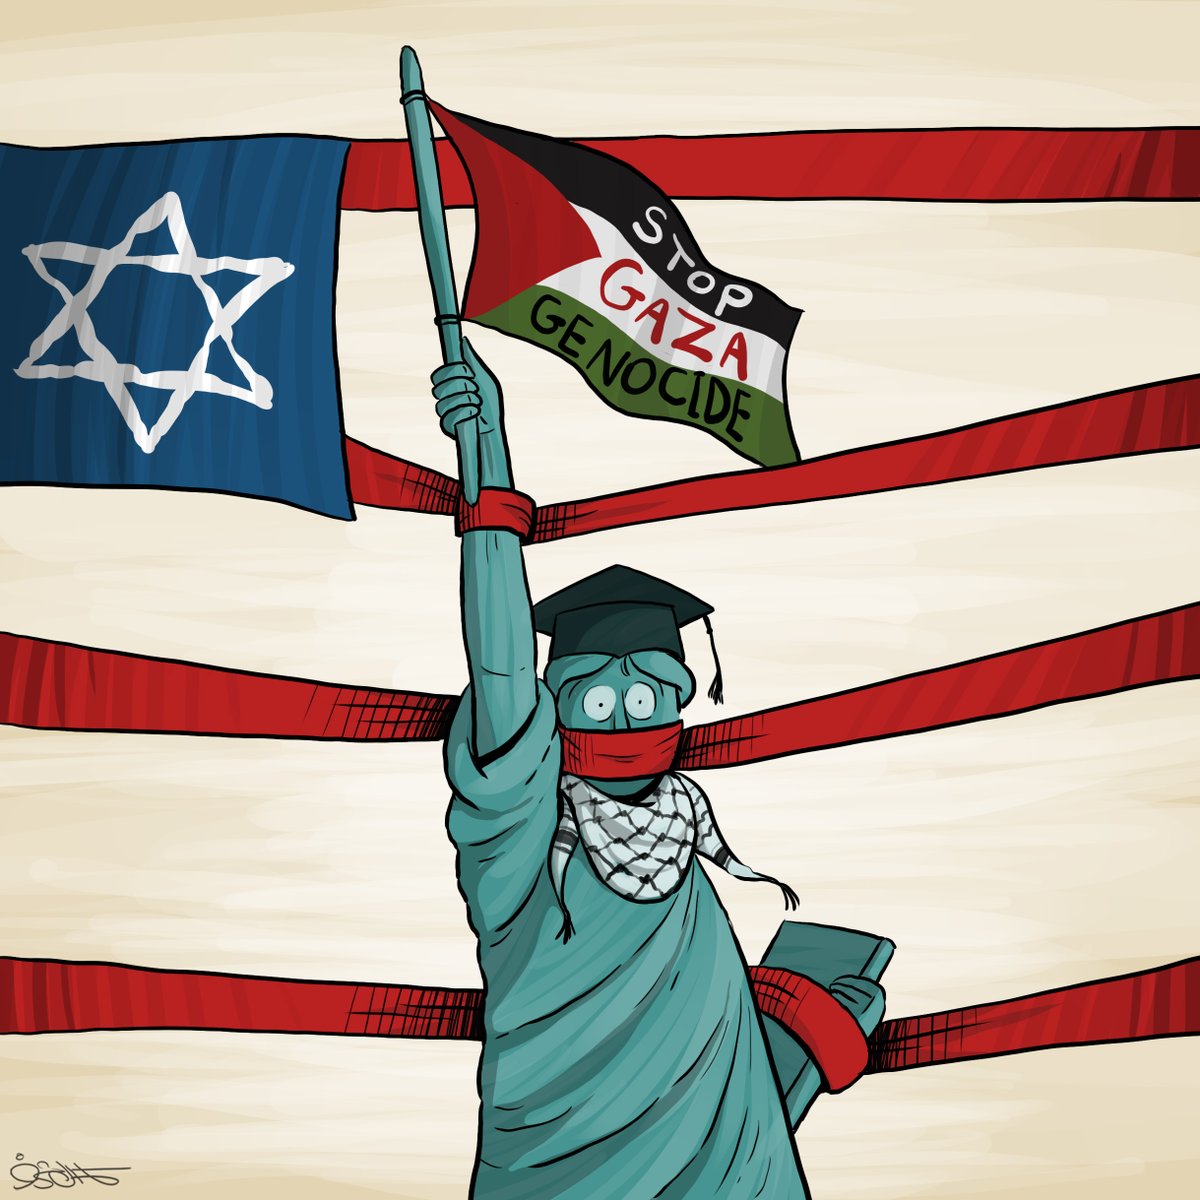 #كاريكاتير 
#StudentsForGaza
#لن_نترك_فلسطين
#PalestineNotAlone